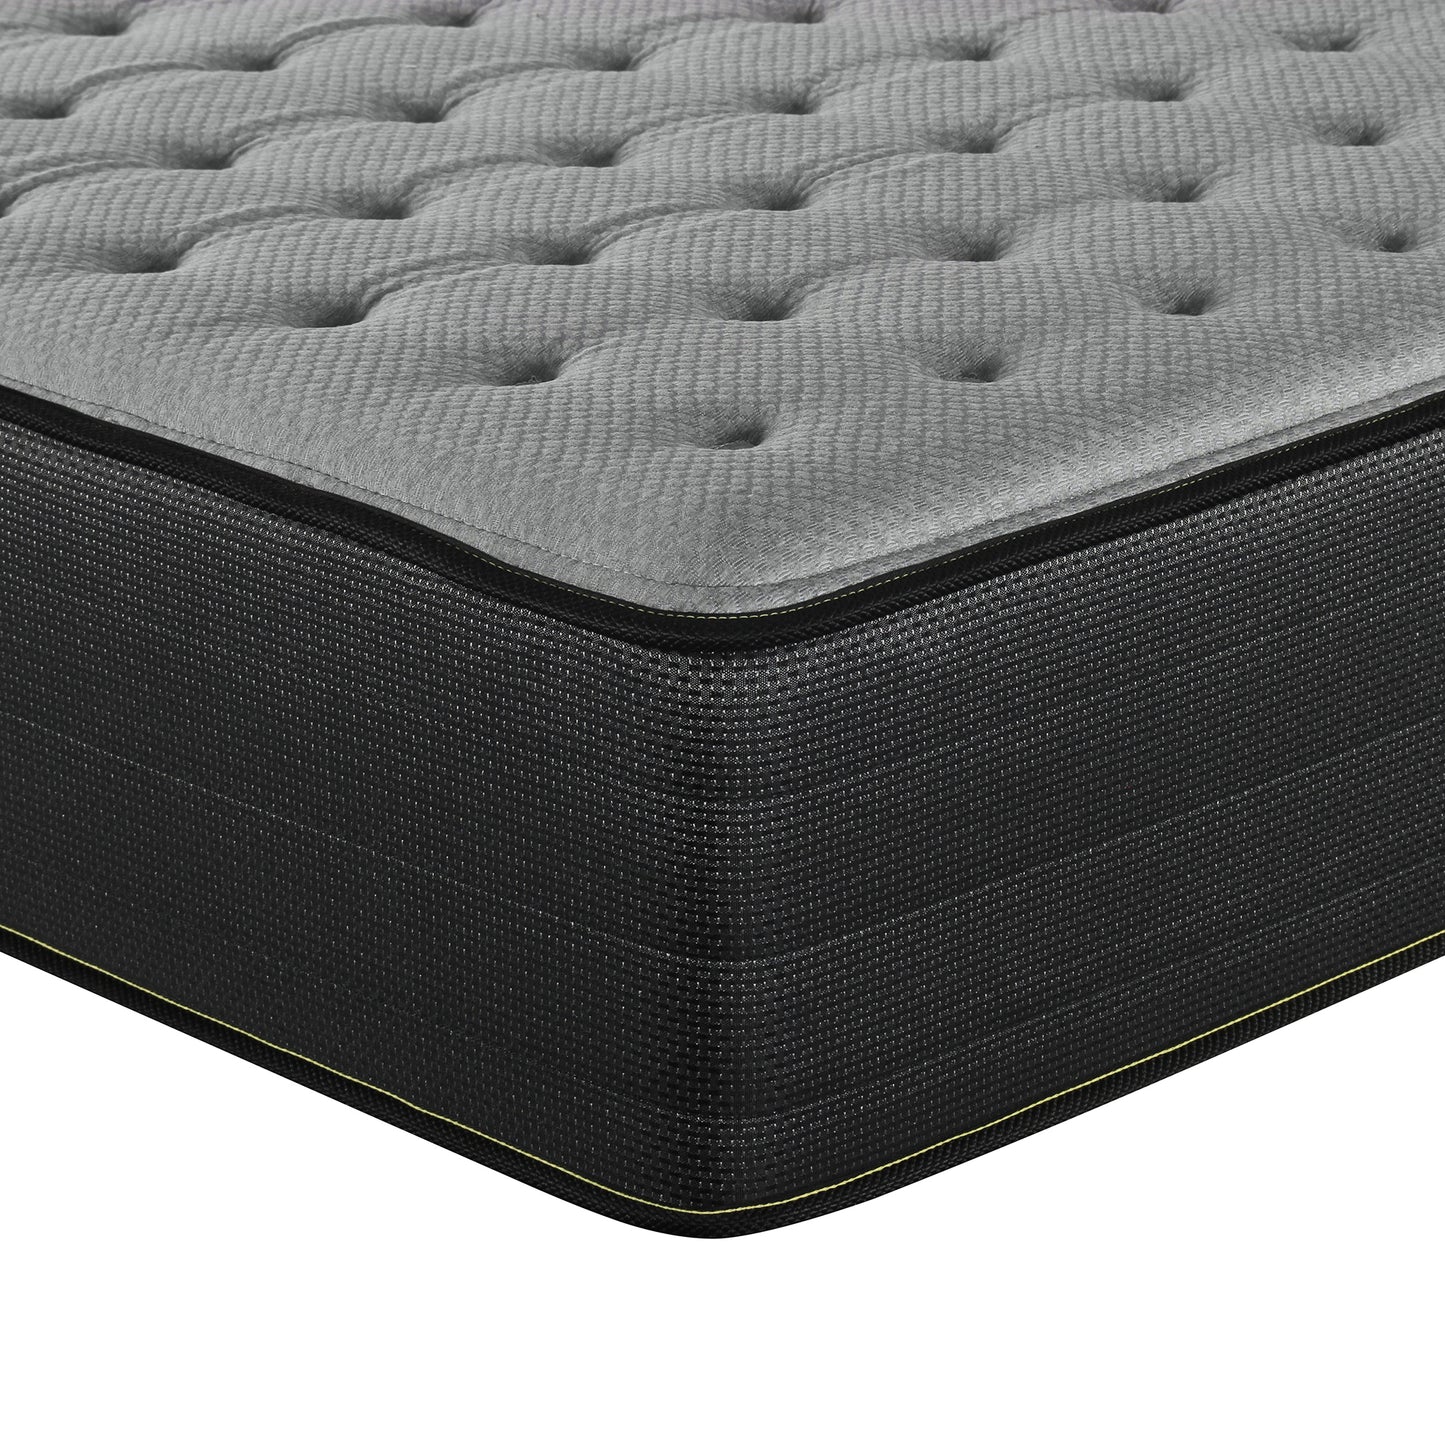 Perryton Firm 14" firm mattress